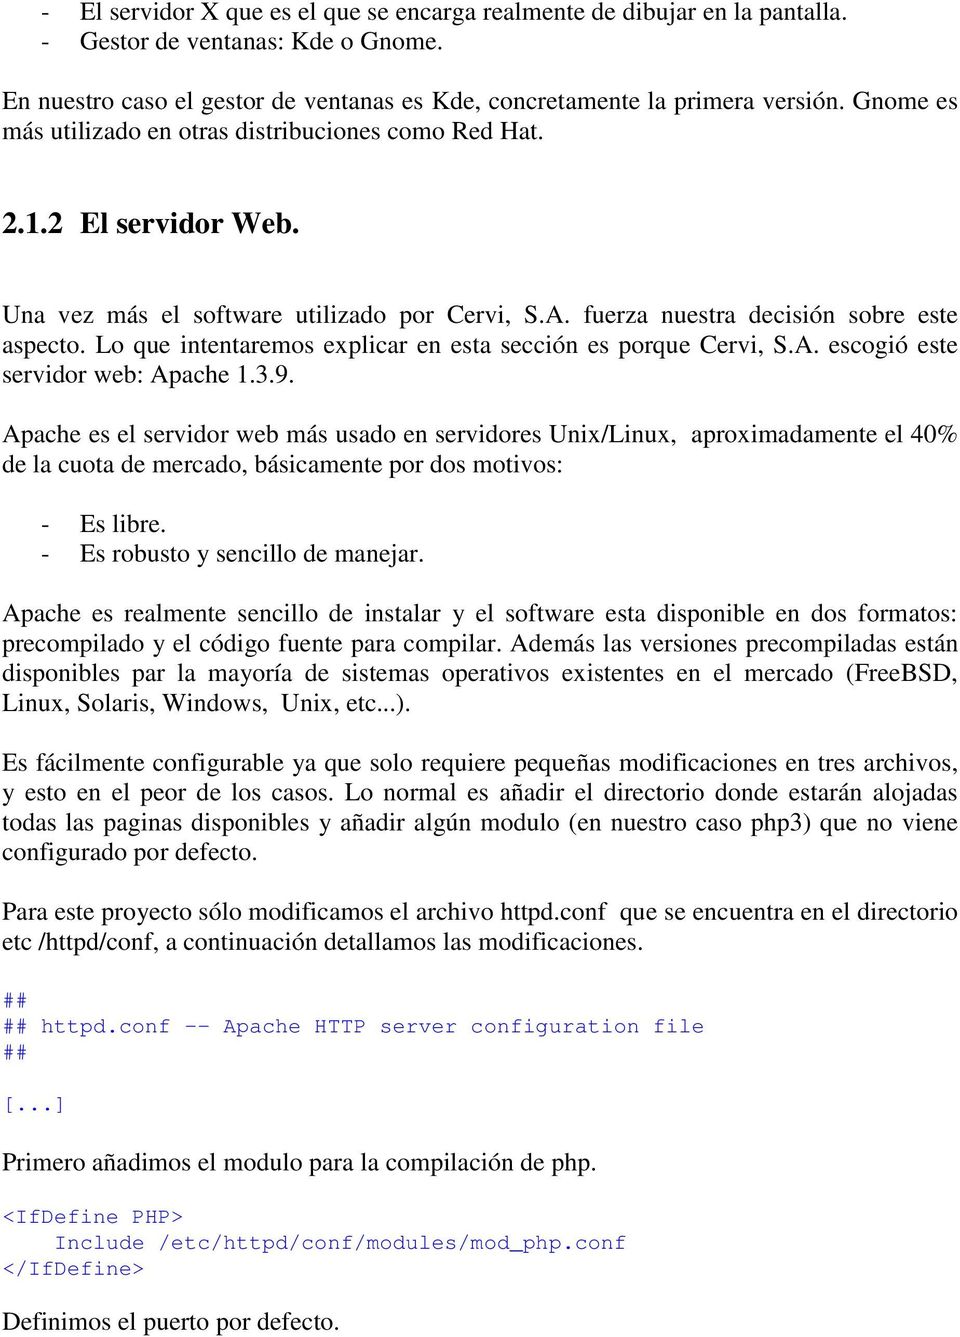 Lo que intentaremos explicar en esta sección es porque Cervi, S.A. escogió este servidor web: Apache 1.3.9.